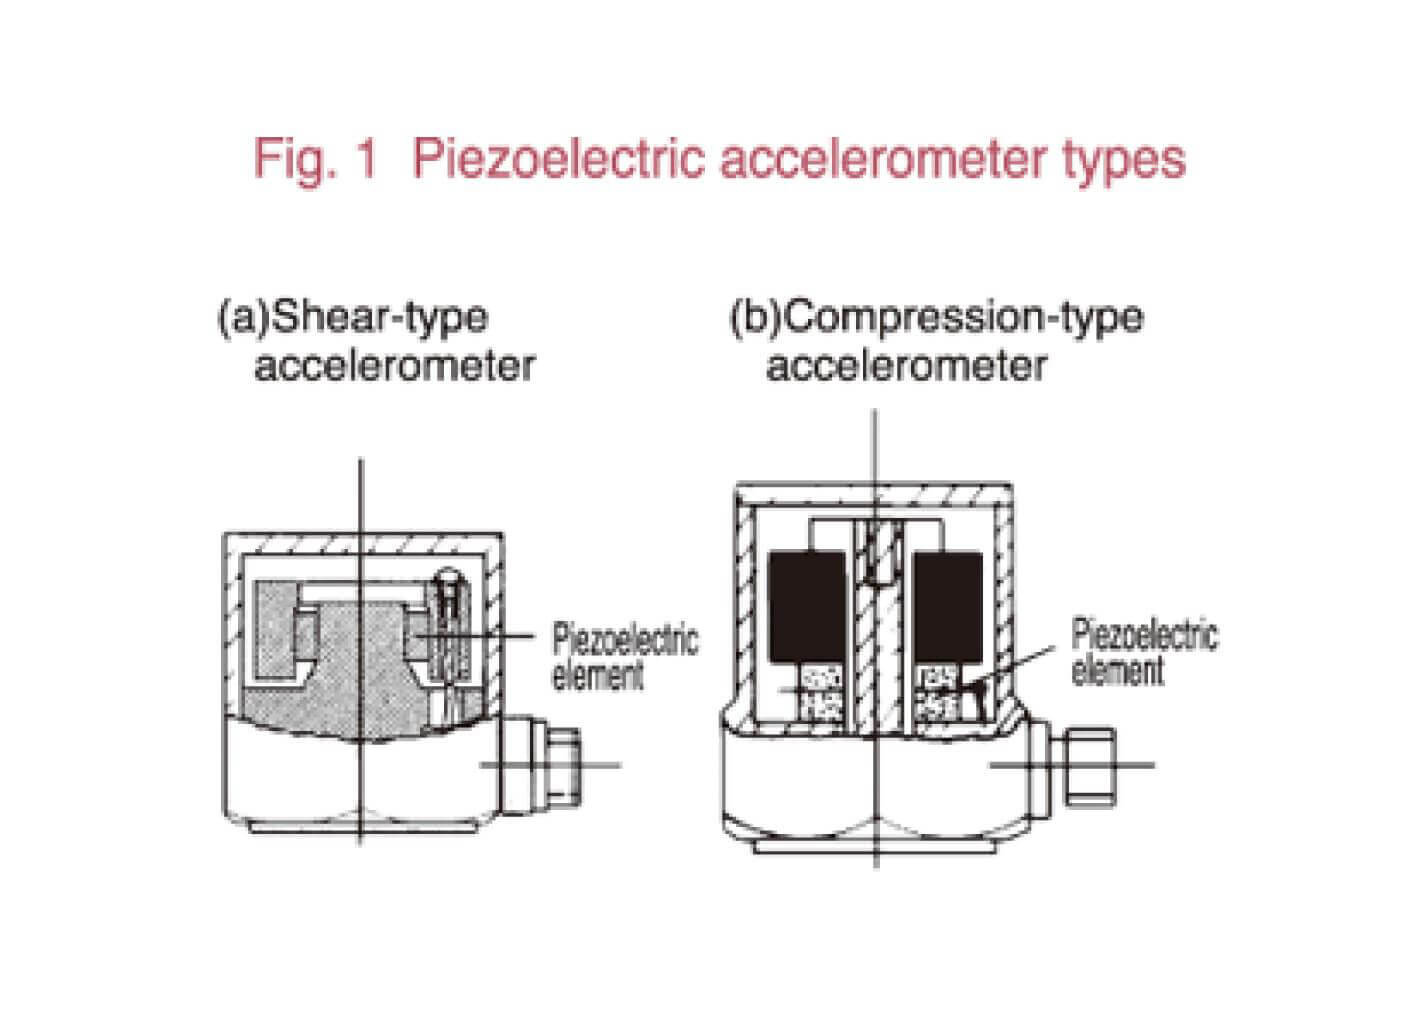 Piezoelectric accelerometer types